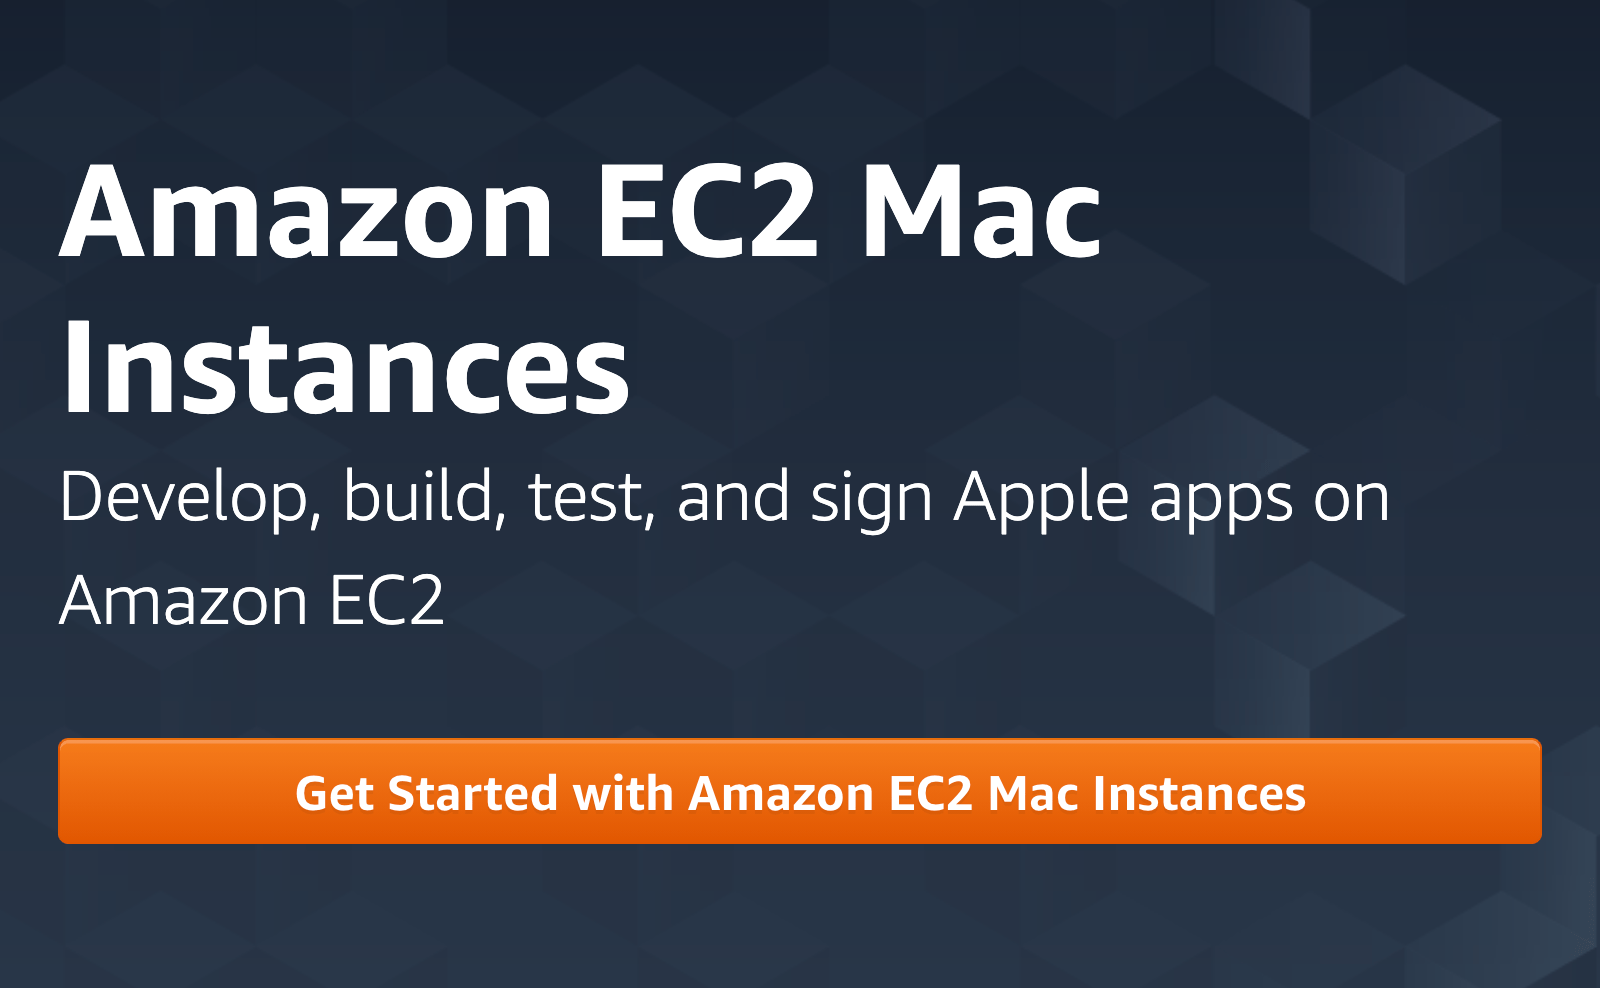 Amazon EC2 Mac mini